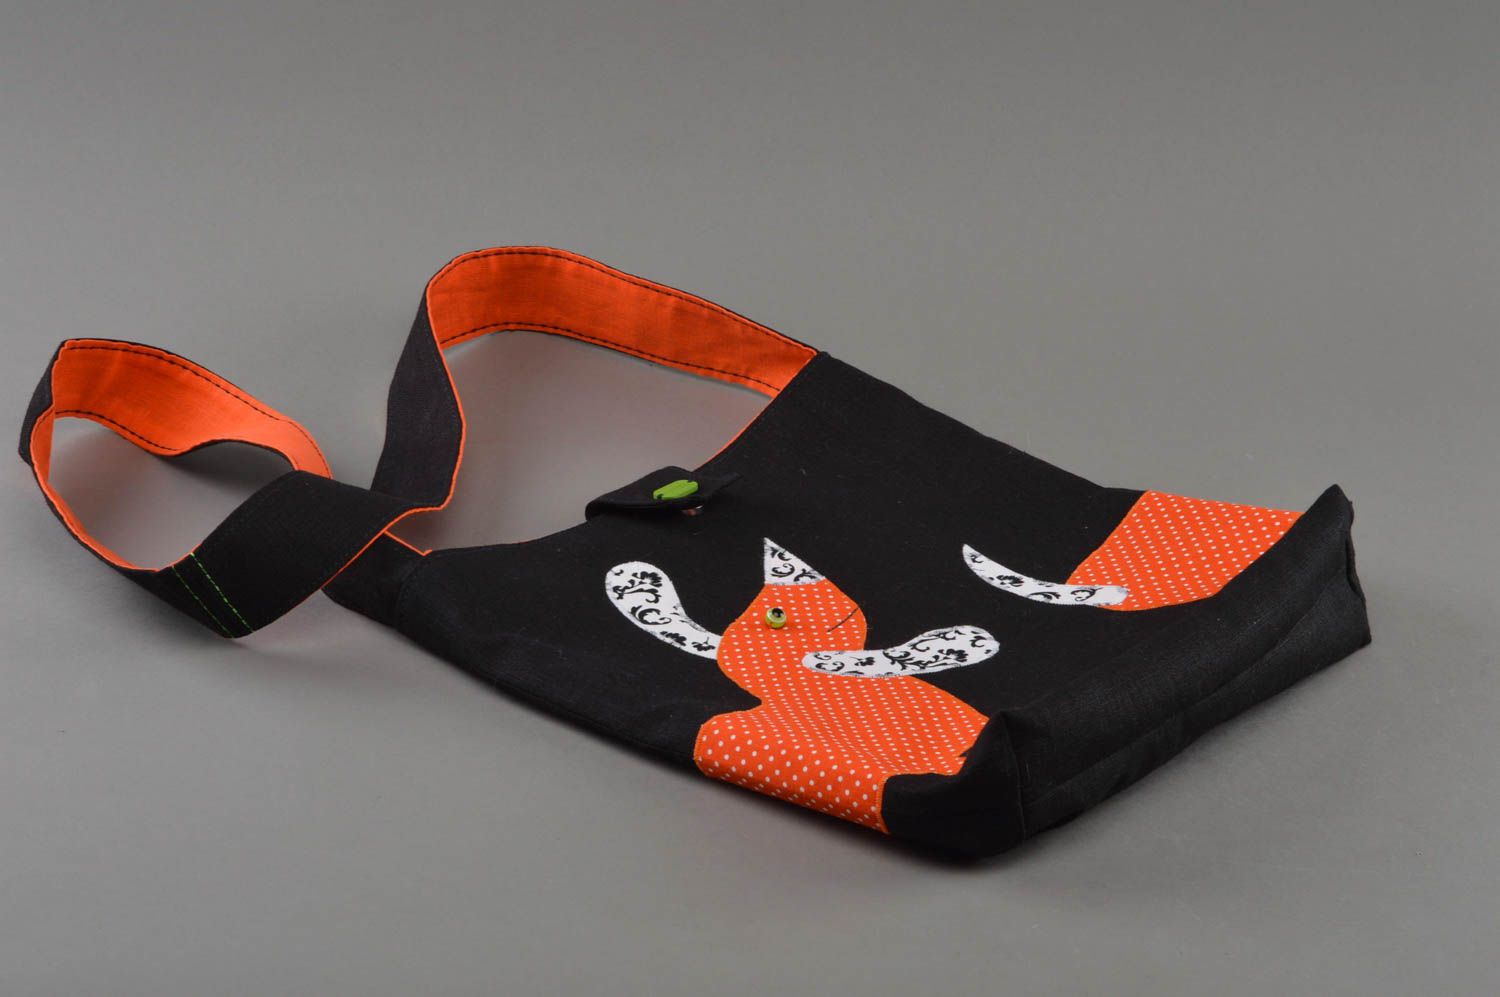 Öko Tasche aus Stoff handmade schwarz orange mit gepunkteten Dackeln schön foto 1